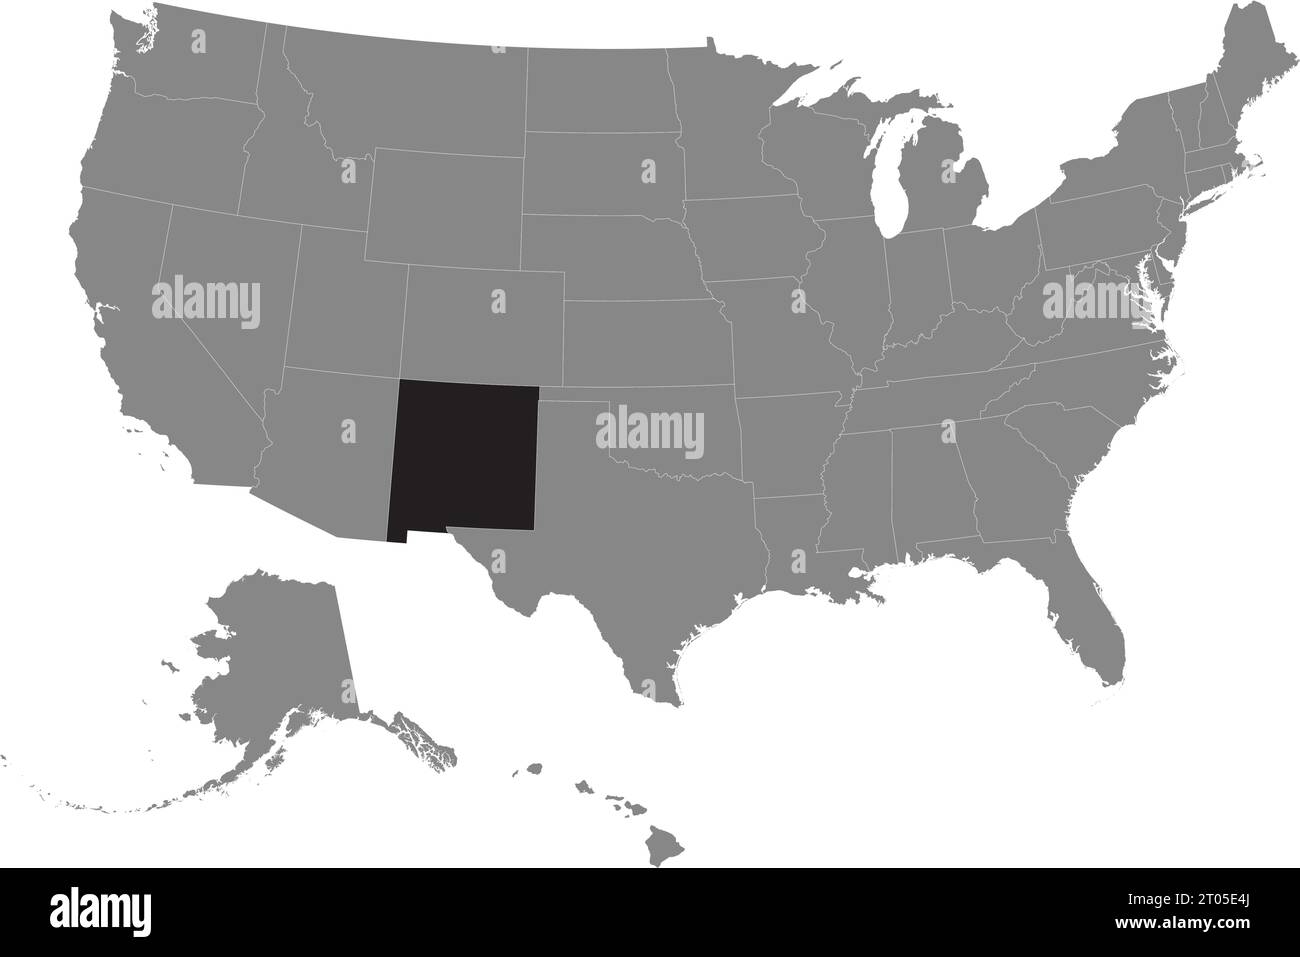 Schwarze CMYK-Bundeskarte von NEW MEXICO in detaillierter grauer, leerer politischer Karte der Vereinigten Staaten von Amerika auf transparentem Hintergrund Stock Vektor